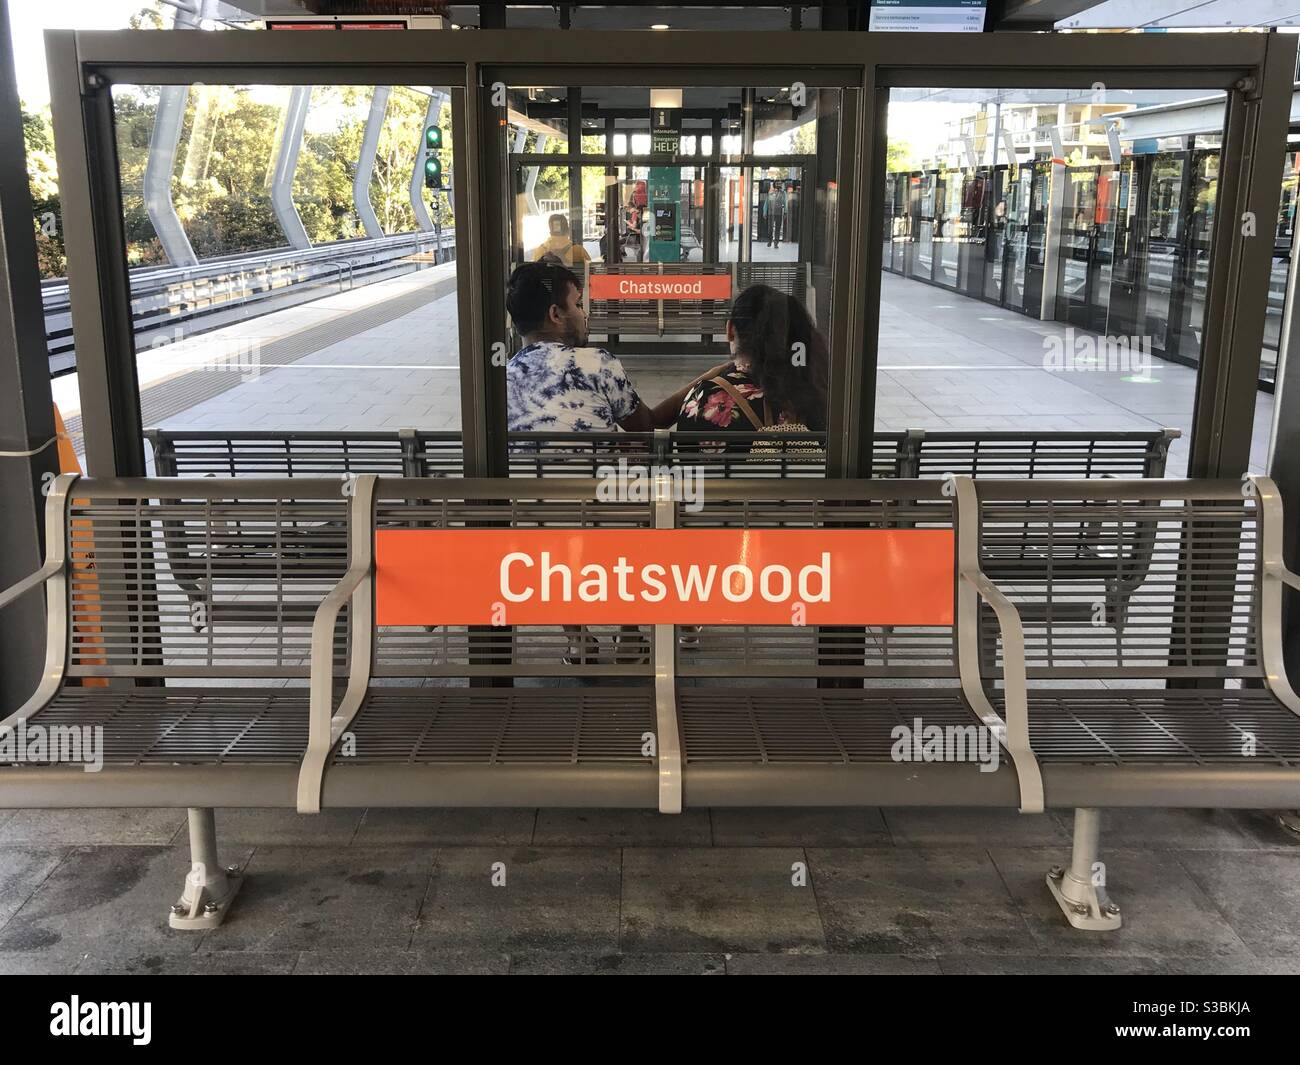 Chatswood station platform, Sydney, Australia Stock Photo